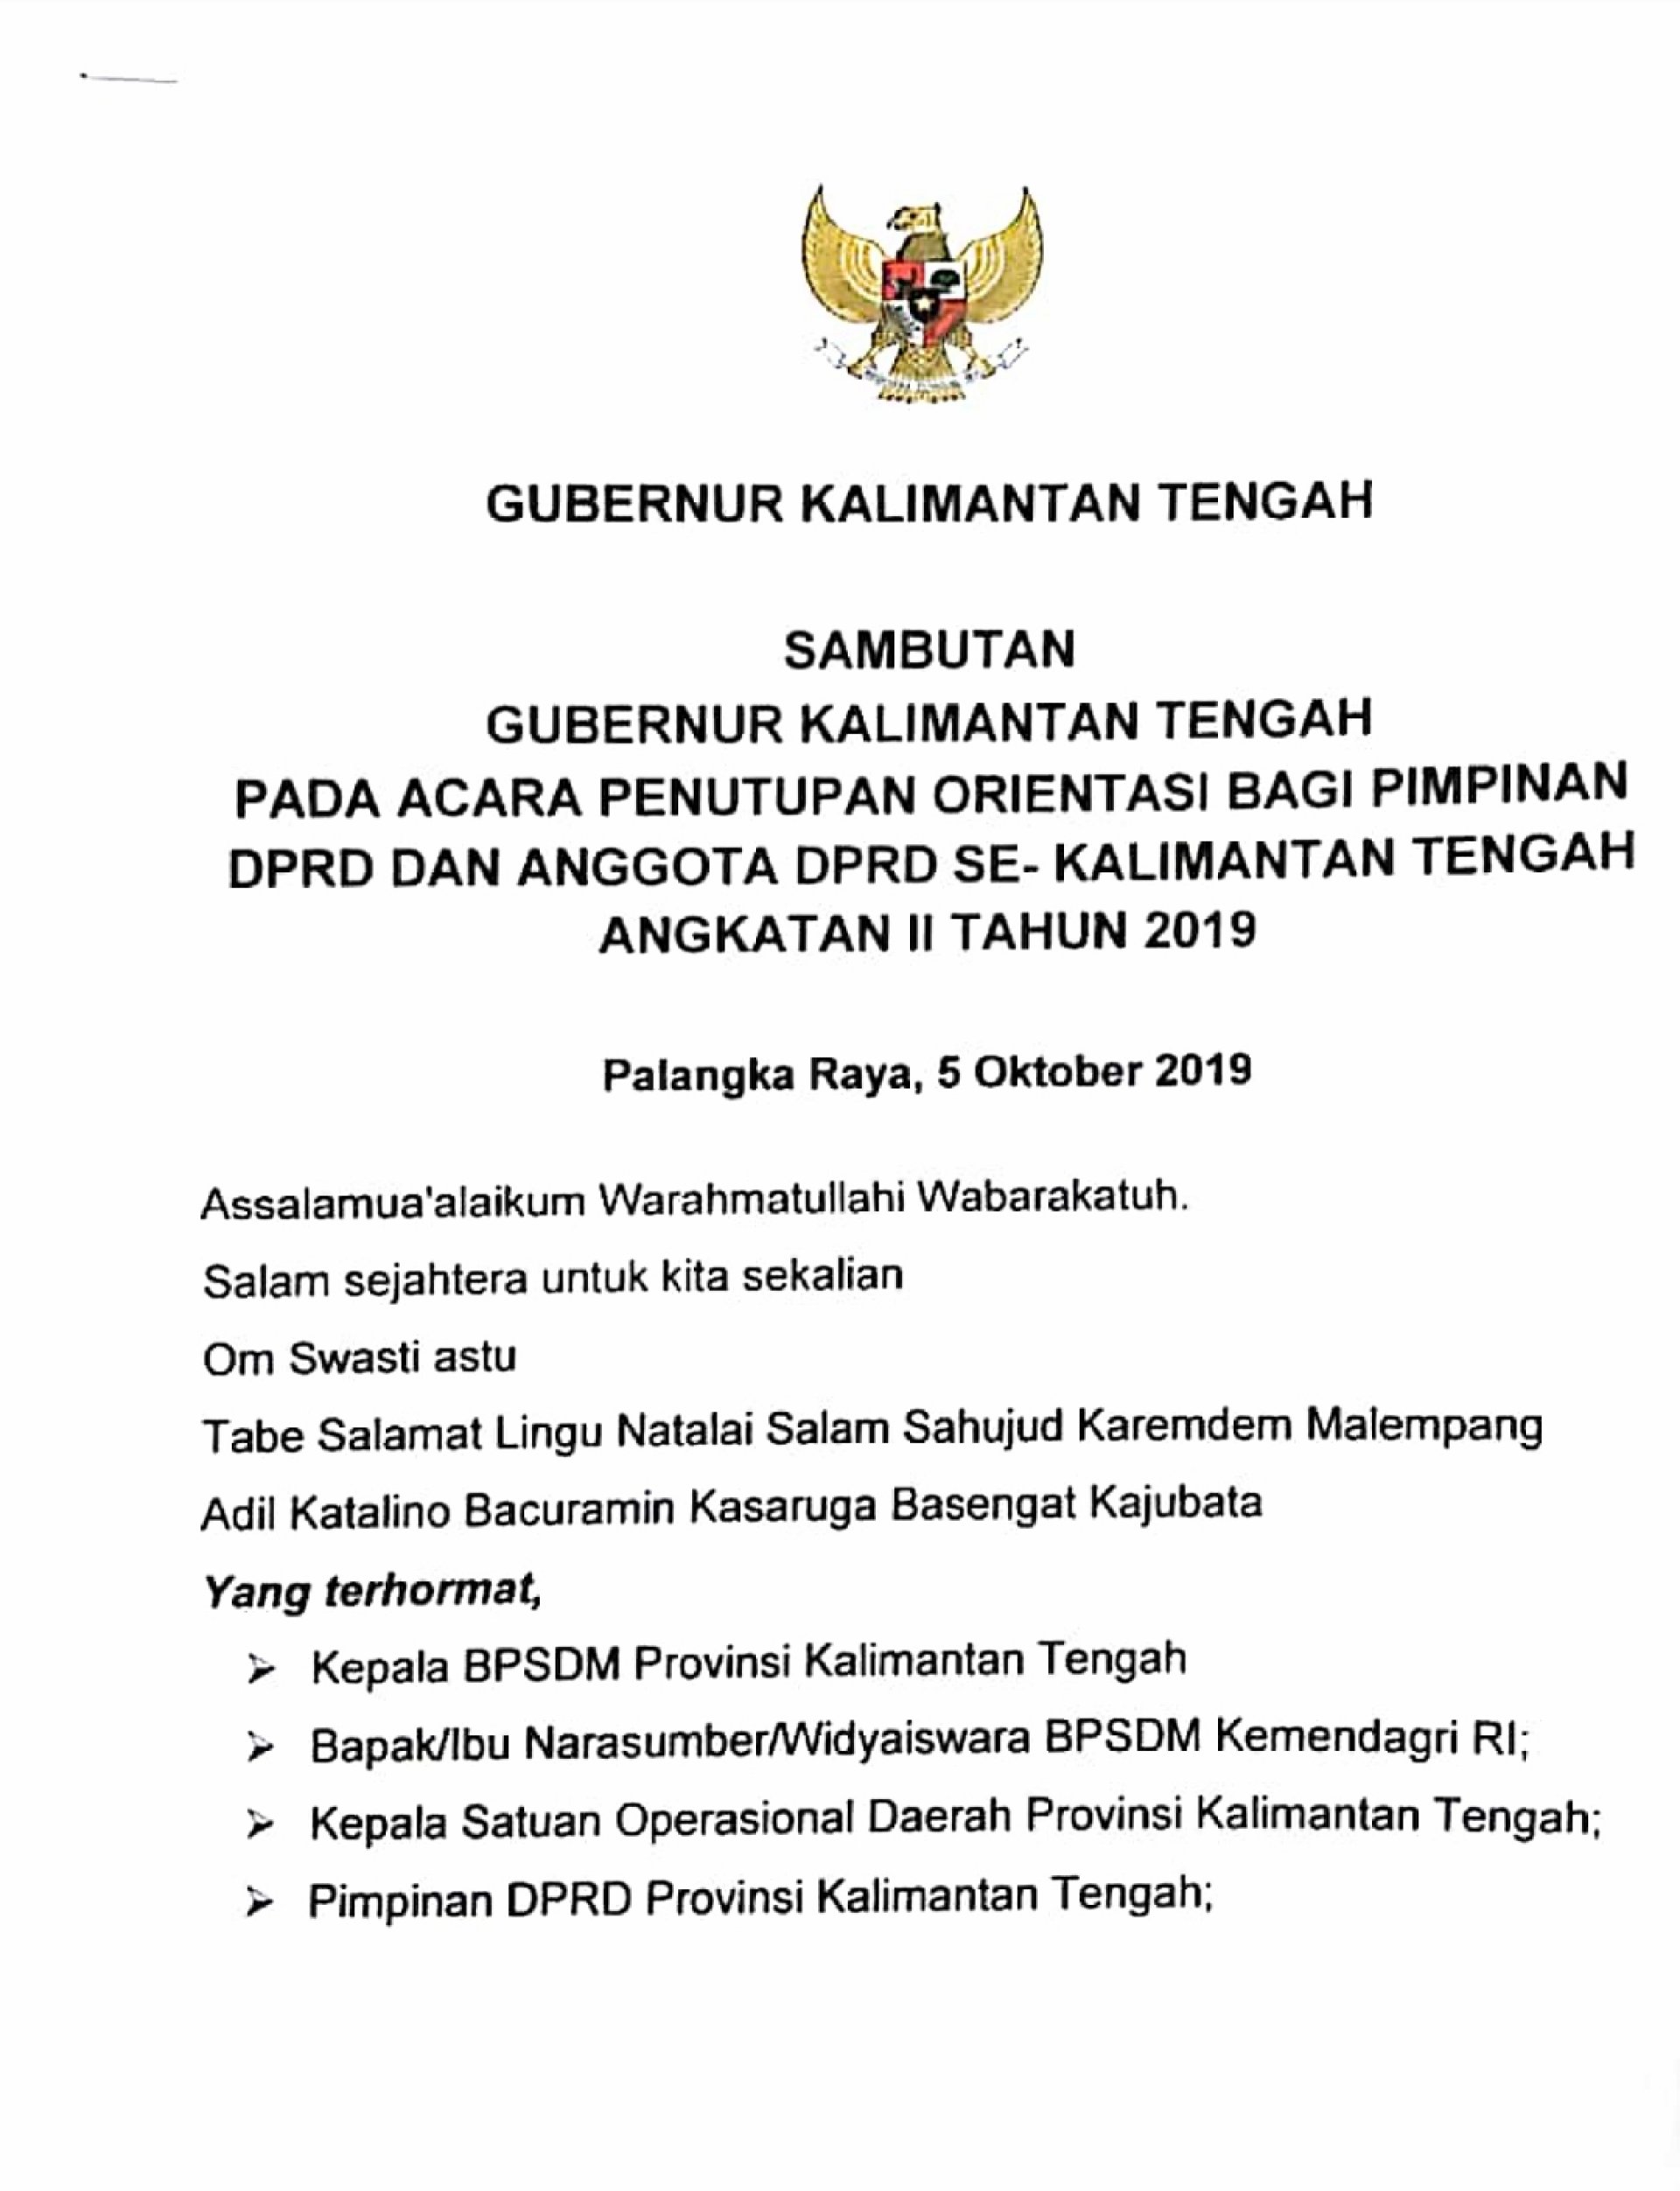 Sambutan Gubernur Kalimantan Tengah pada acara Penutupan Orientasi DPRD se-Kalimantan Tengah Angkatan II Tahun 2019